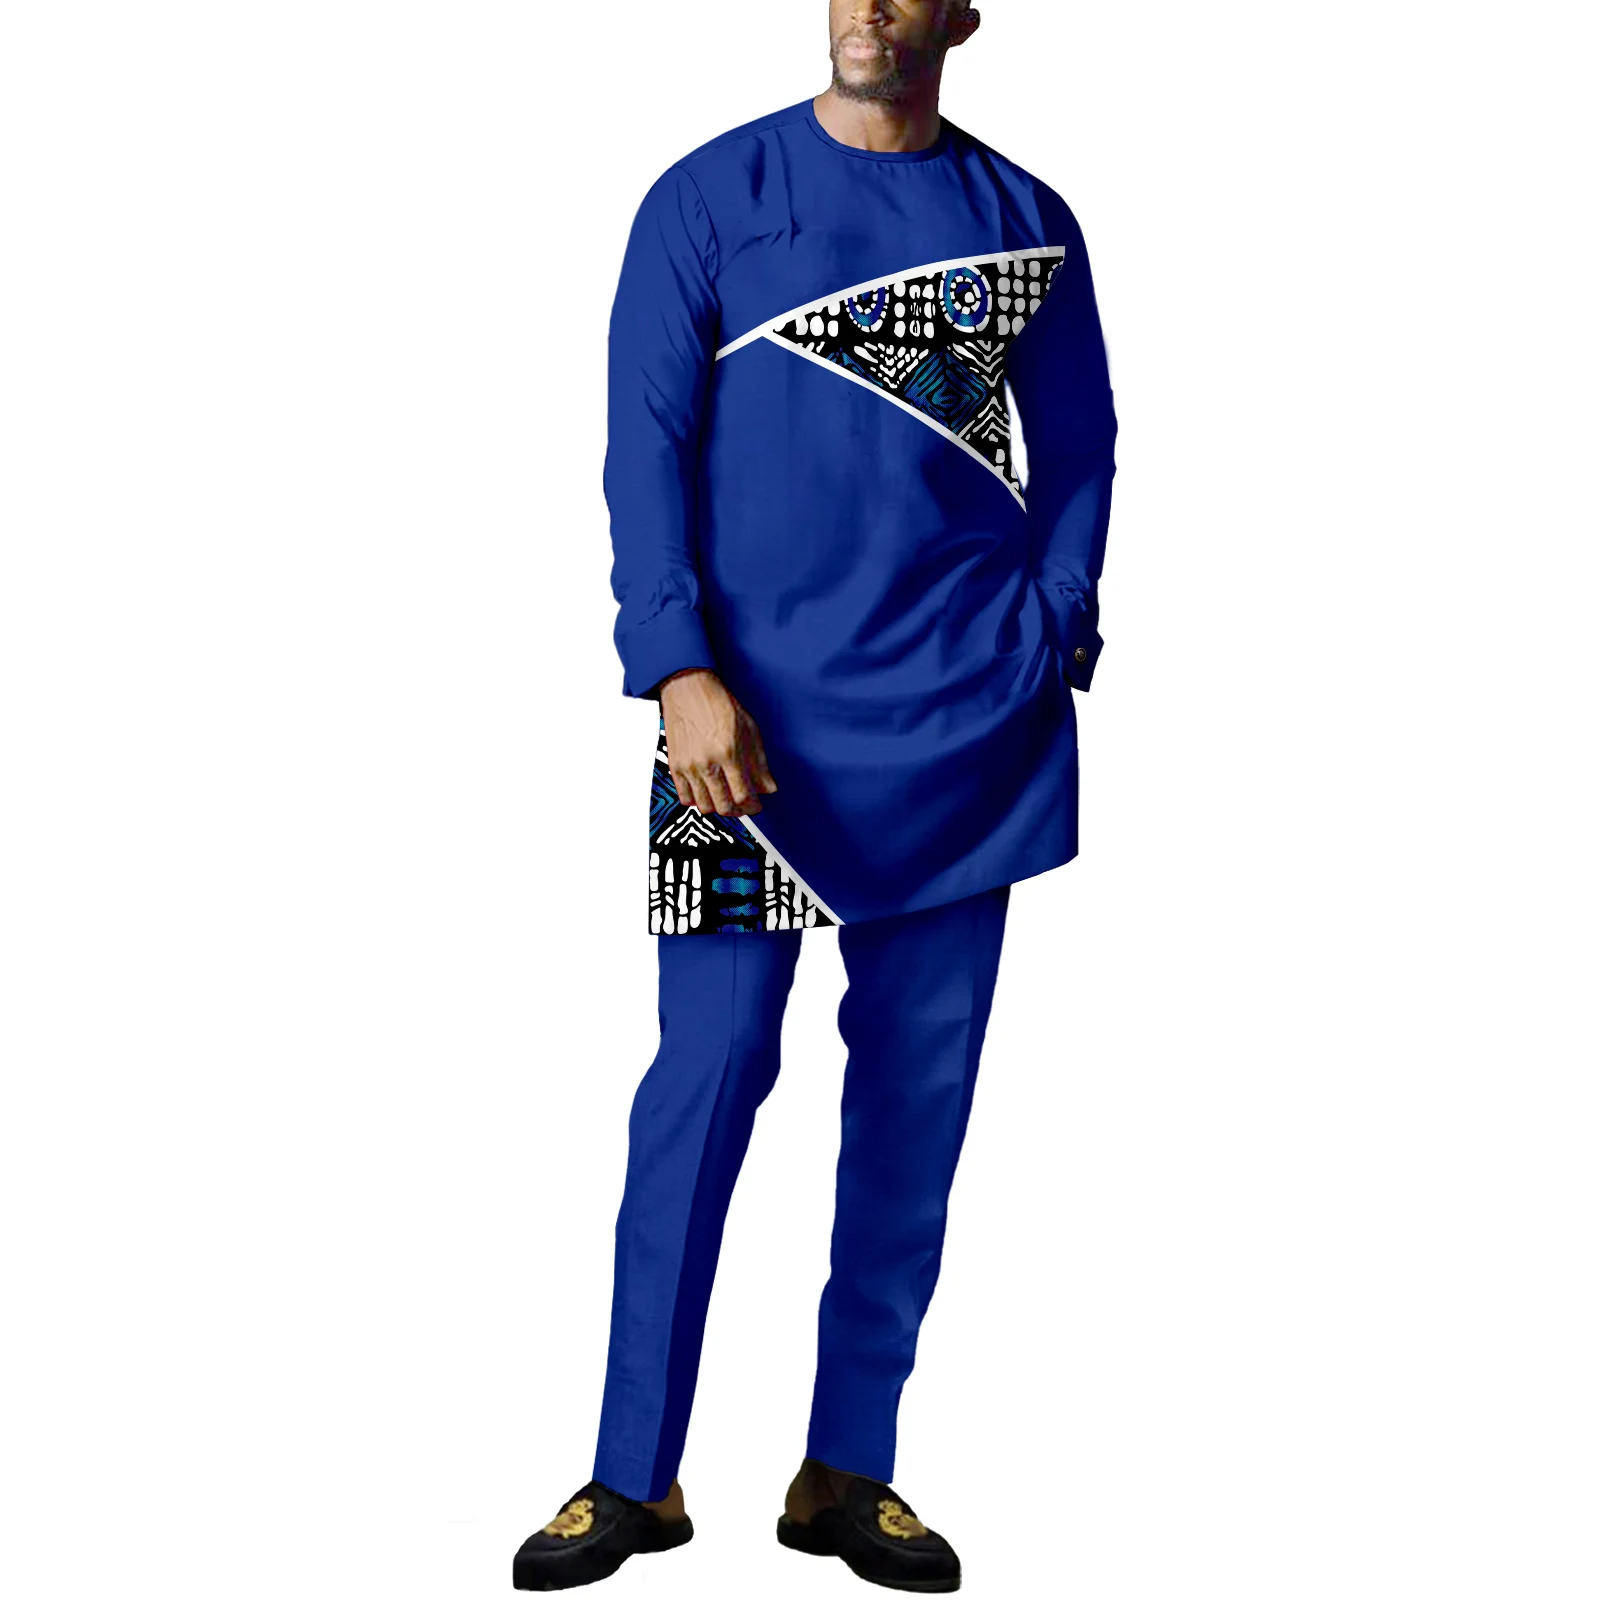 Африканская традиционная одежда для мужчин, Дашики, Свободная повседневная одежда по контракту, племенные наряды, Модный спортивный костюм, комплект из 2 предметов 1